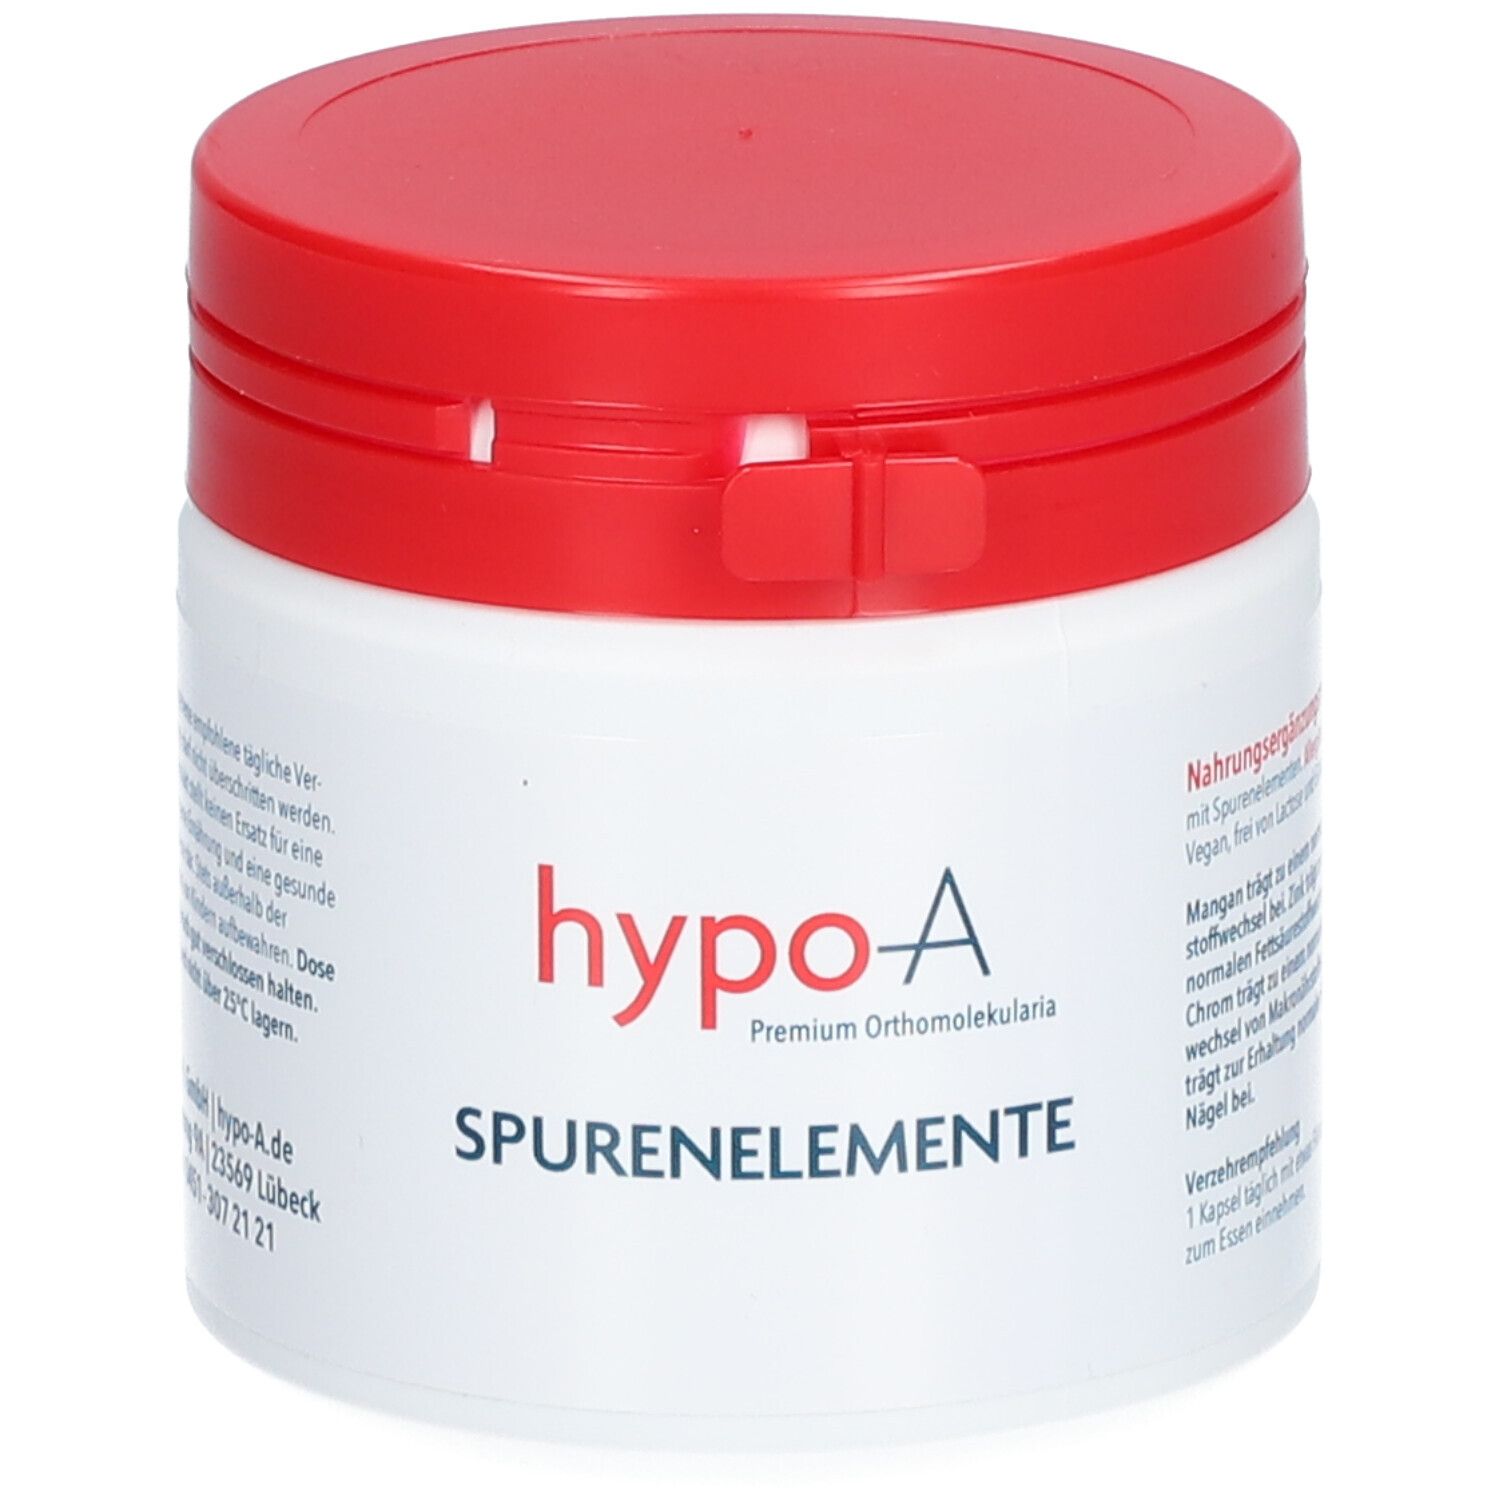 hypo-A Spurenelemente